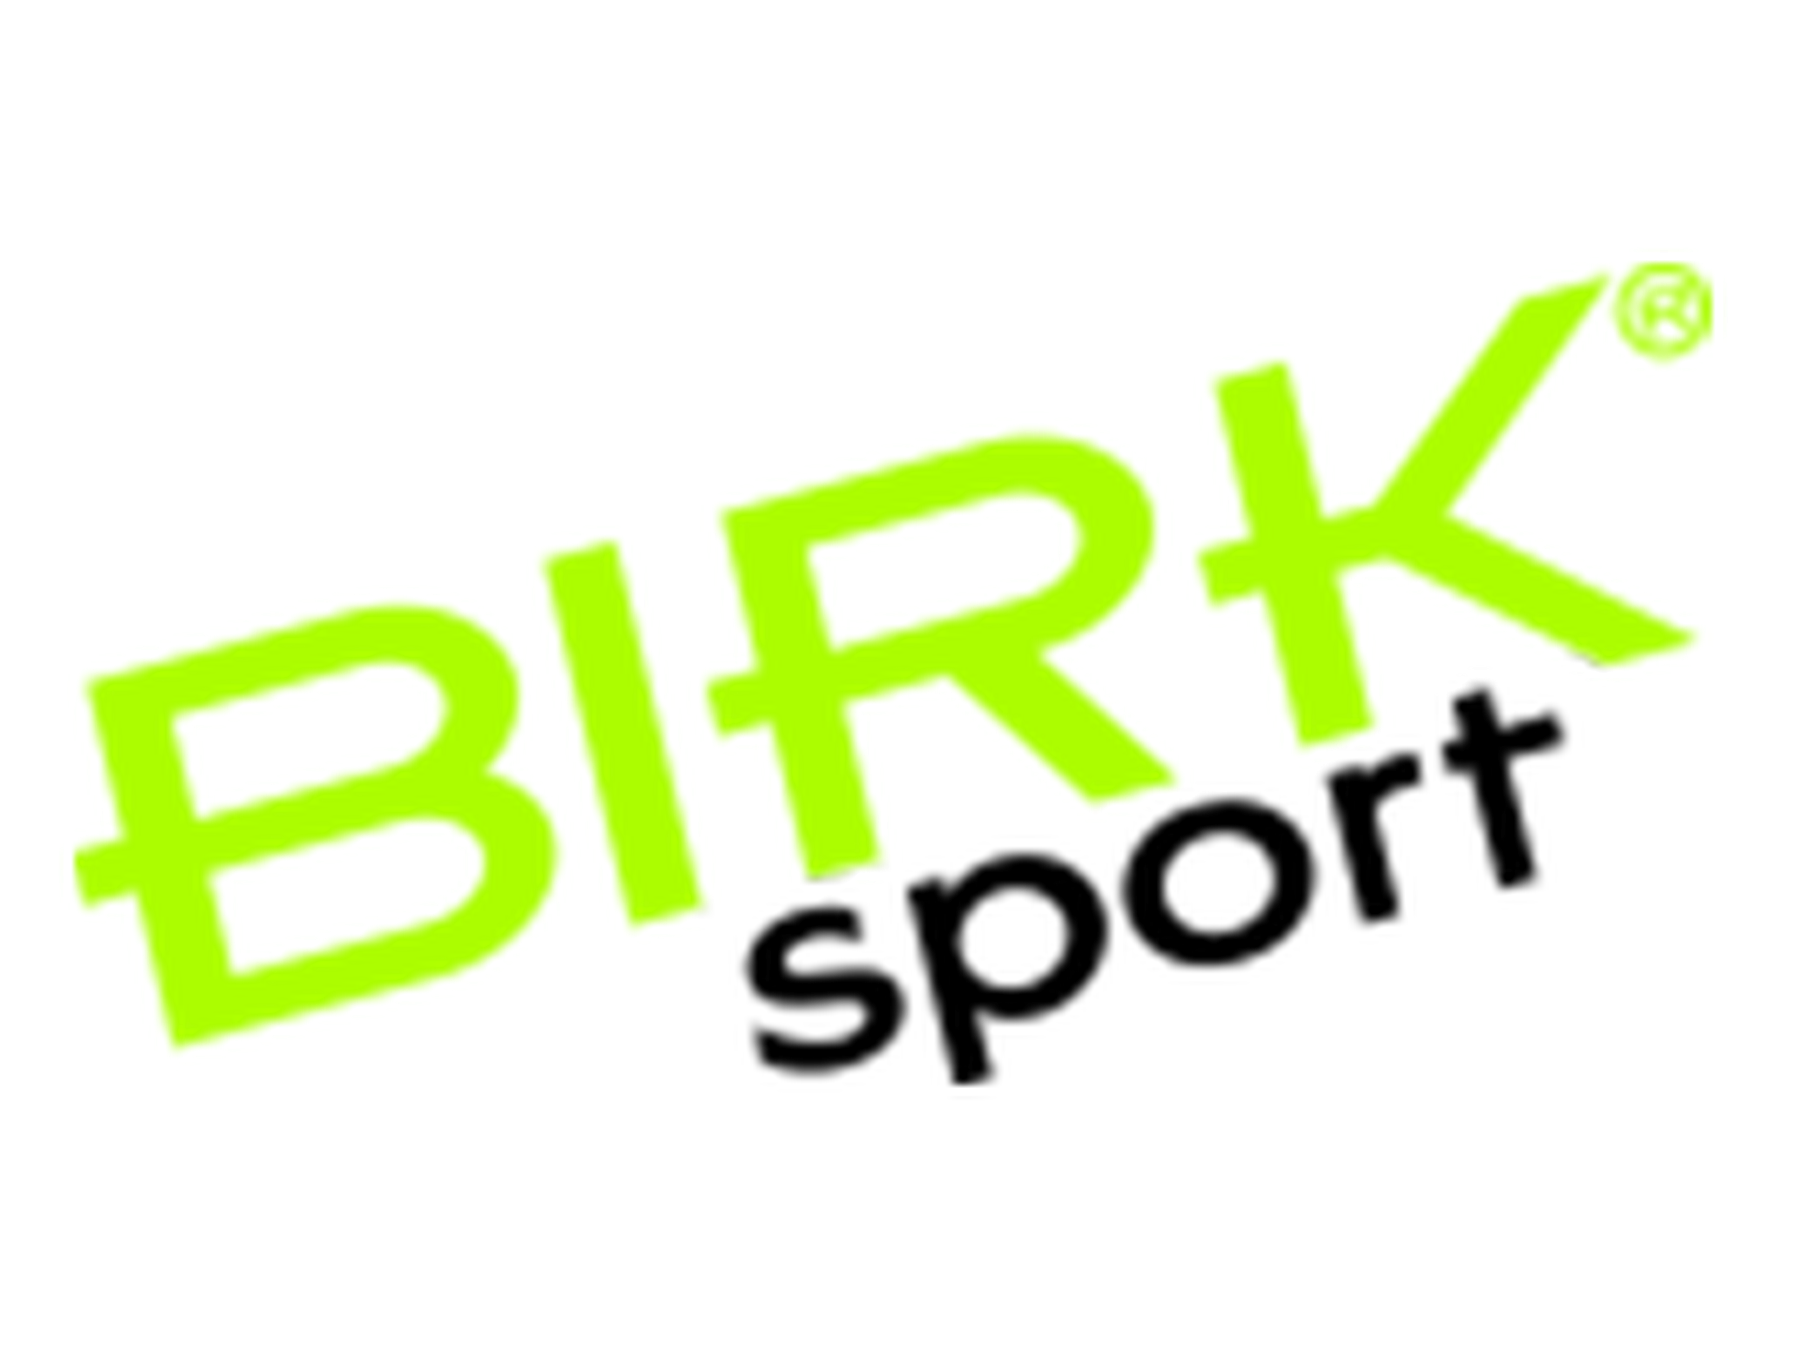 Birk Sport rabattkode